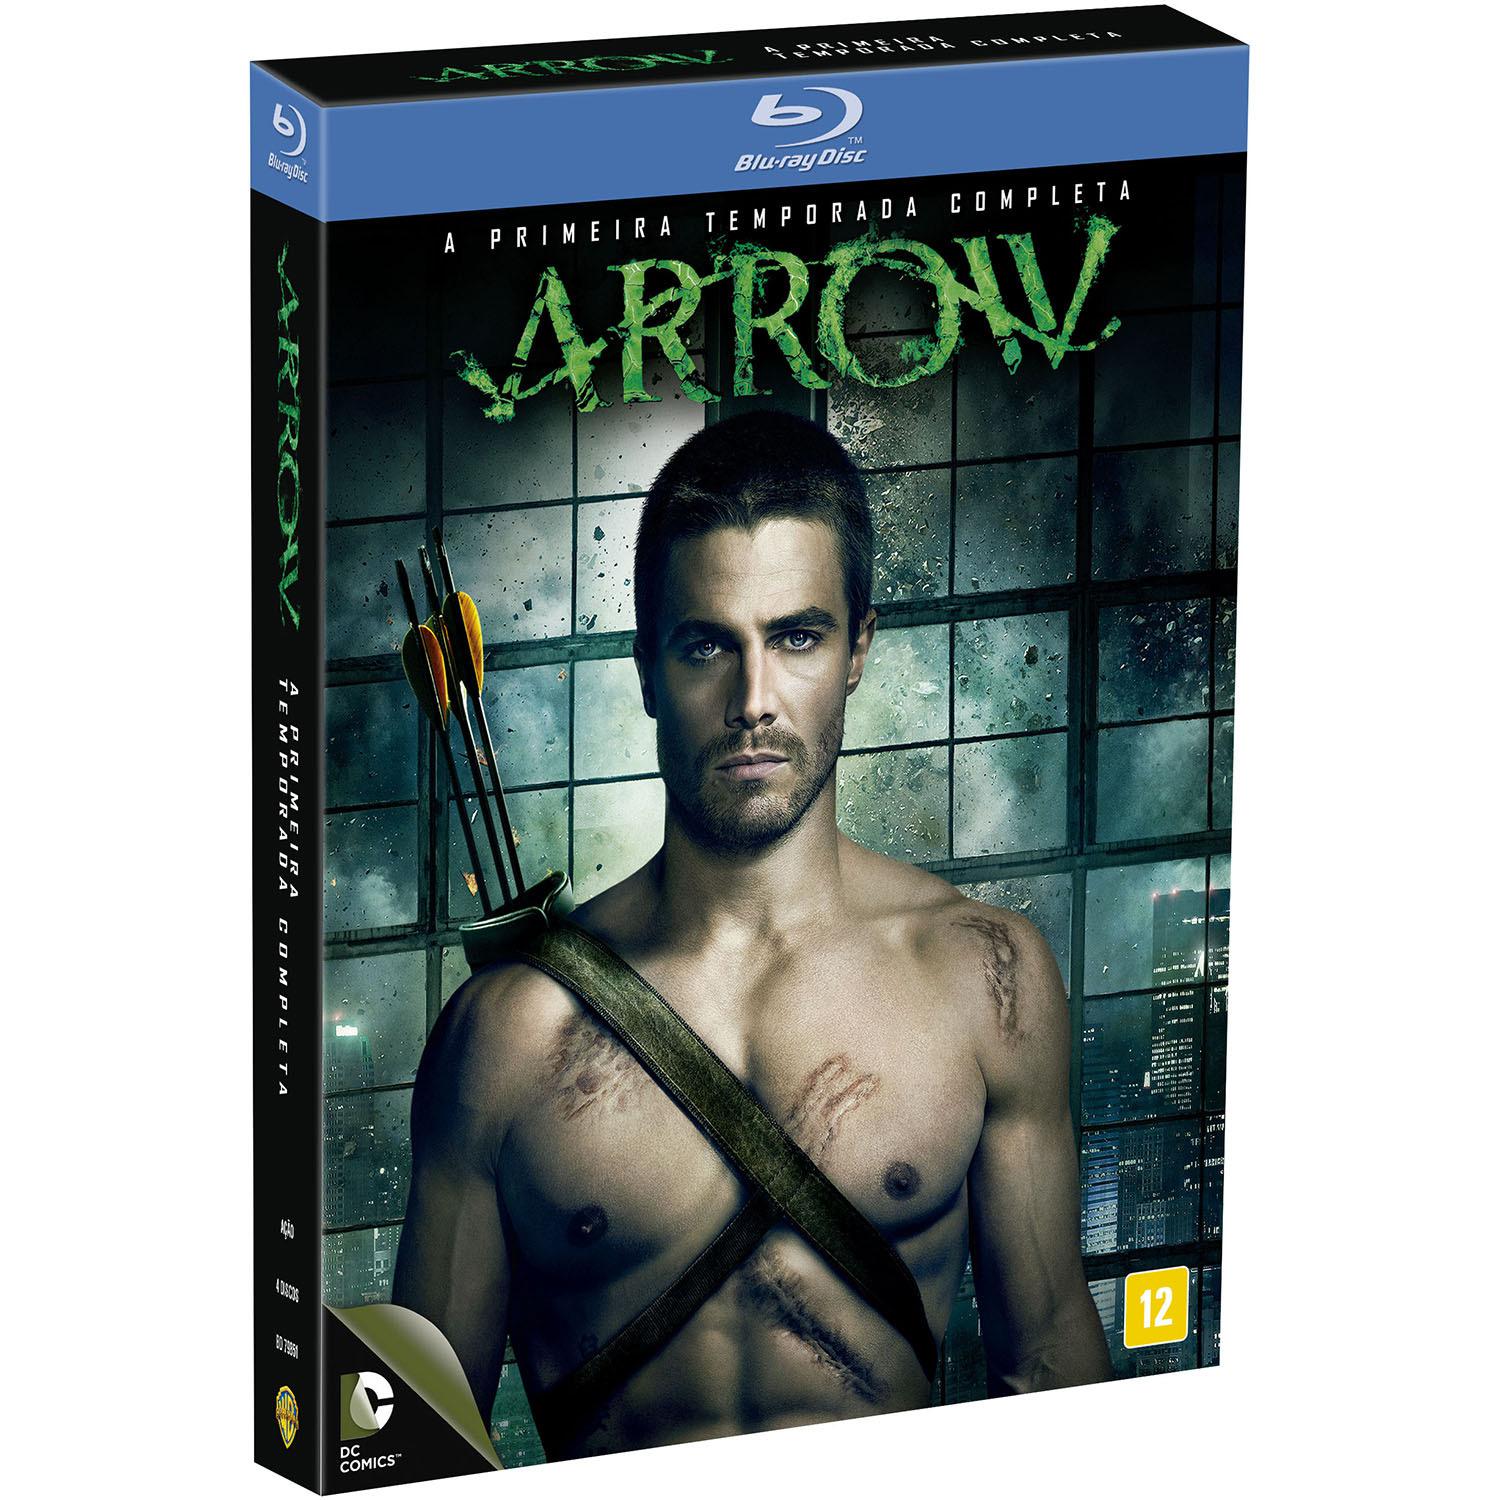 Blu-ray Arrow - A Primeira Temporada Completa (5 Discos) é bom? Vale a pena?